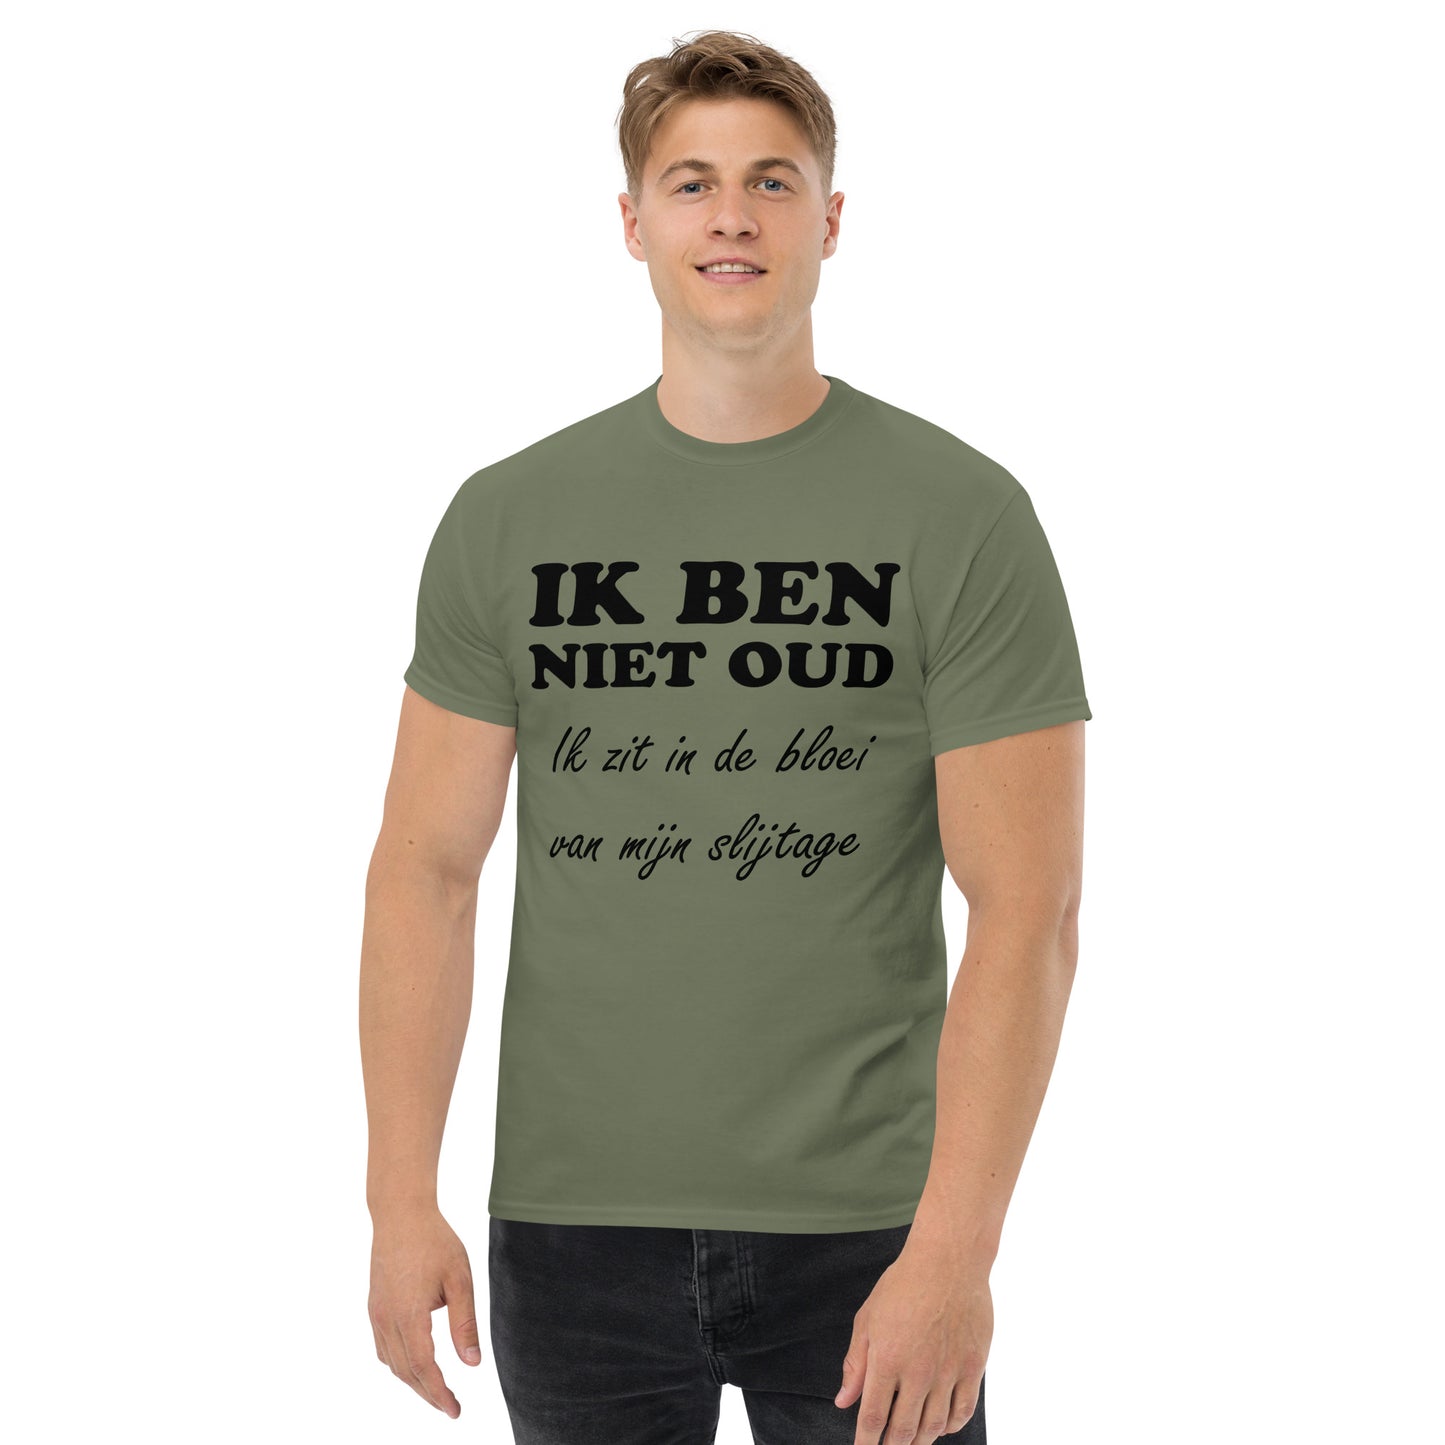 Military green T-shirt with the text "IK BEN NIET OUD ik zit in de bloei van mijn slijtage"